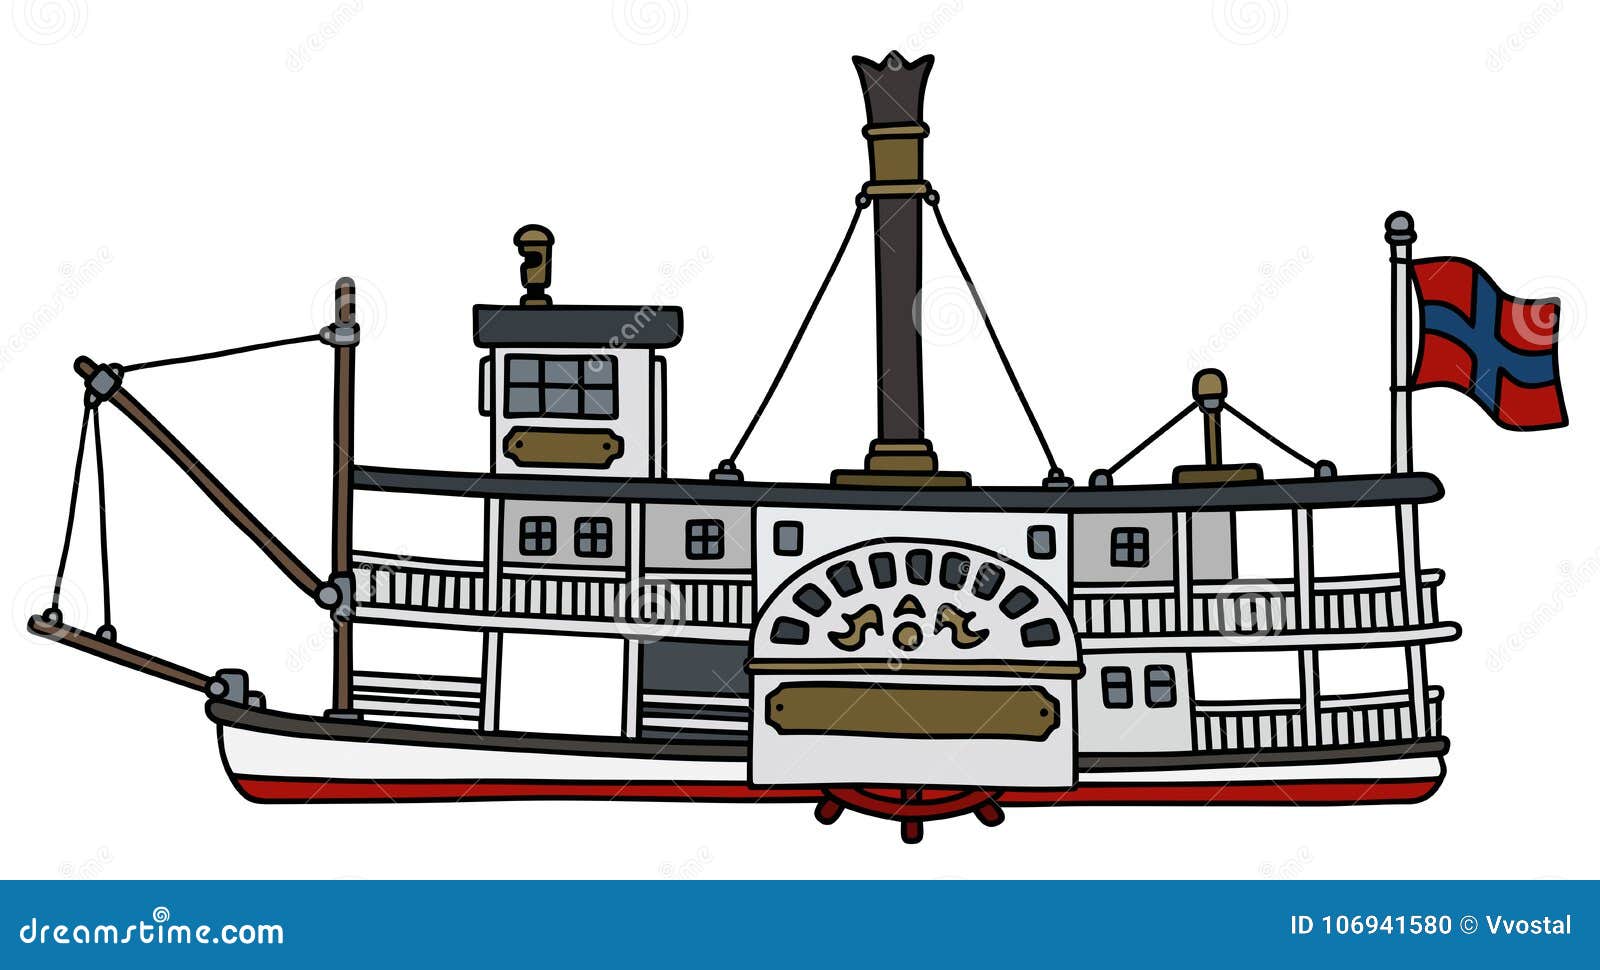 Сигнал парохода. Колесный пароход Paddle Steamer. Пароход на белом фоне. Колесный пароход Krakus. Стилизованное изображение парохода.